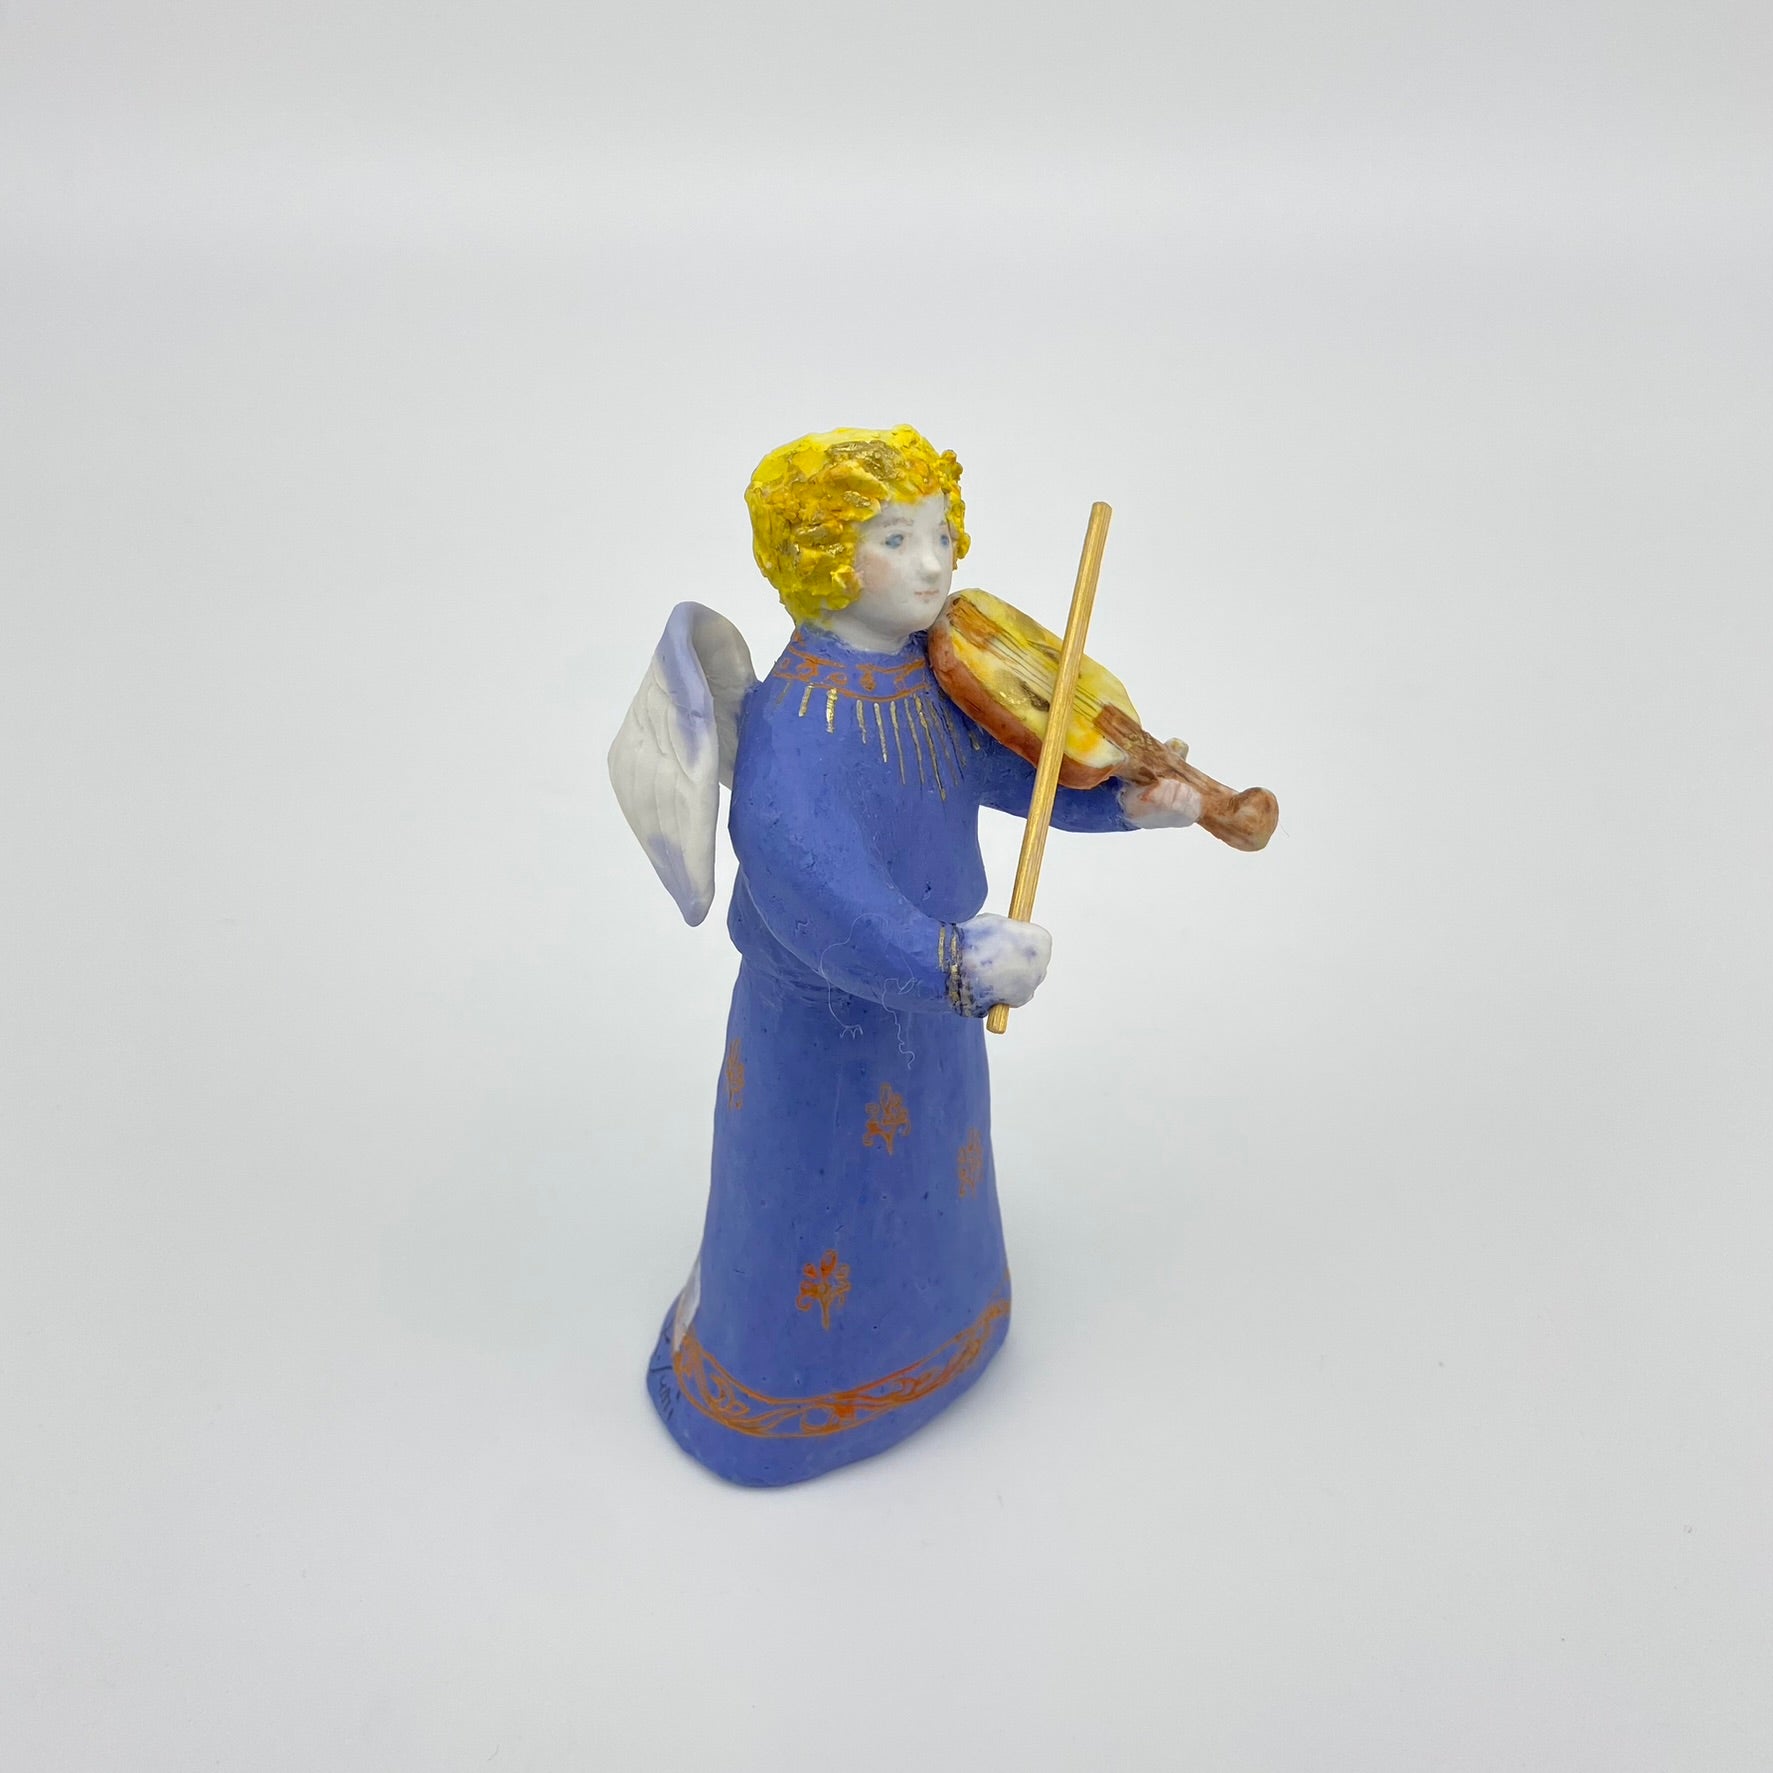 バイオリンの天使 – 彩磁庵